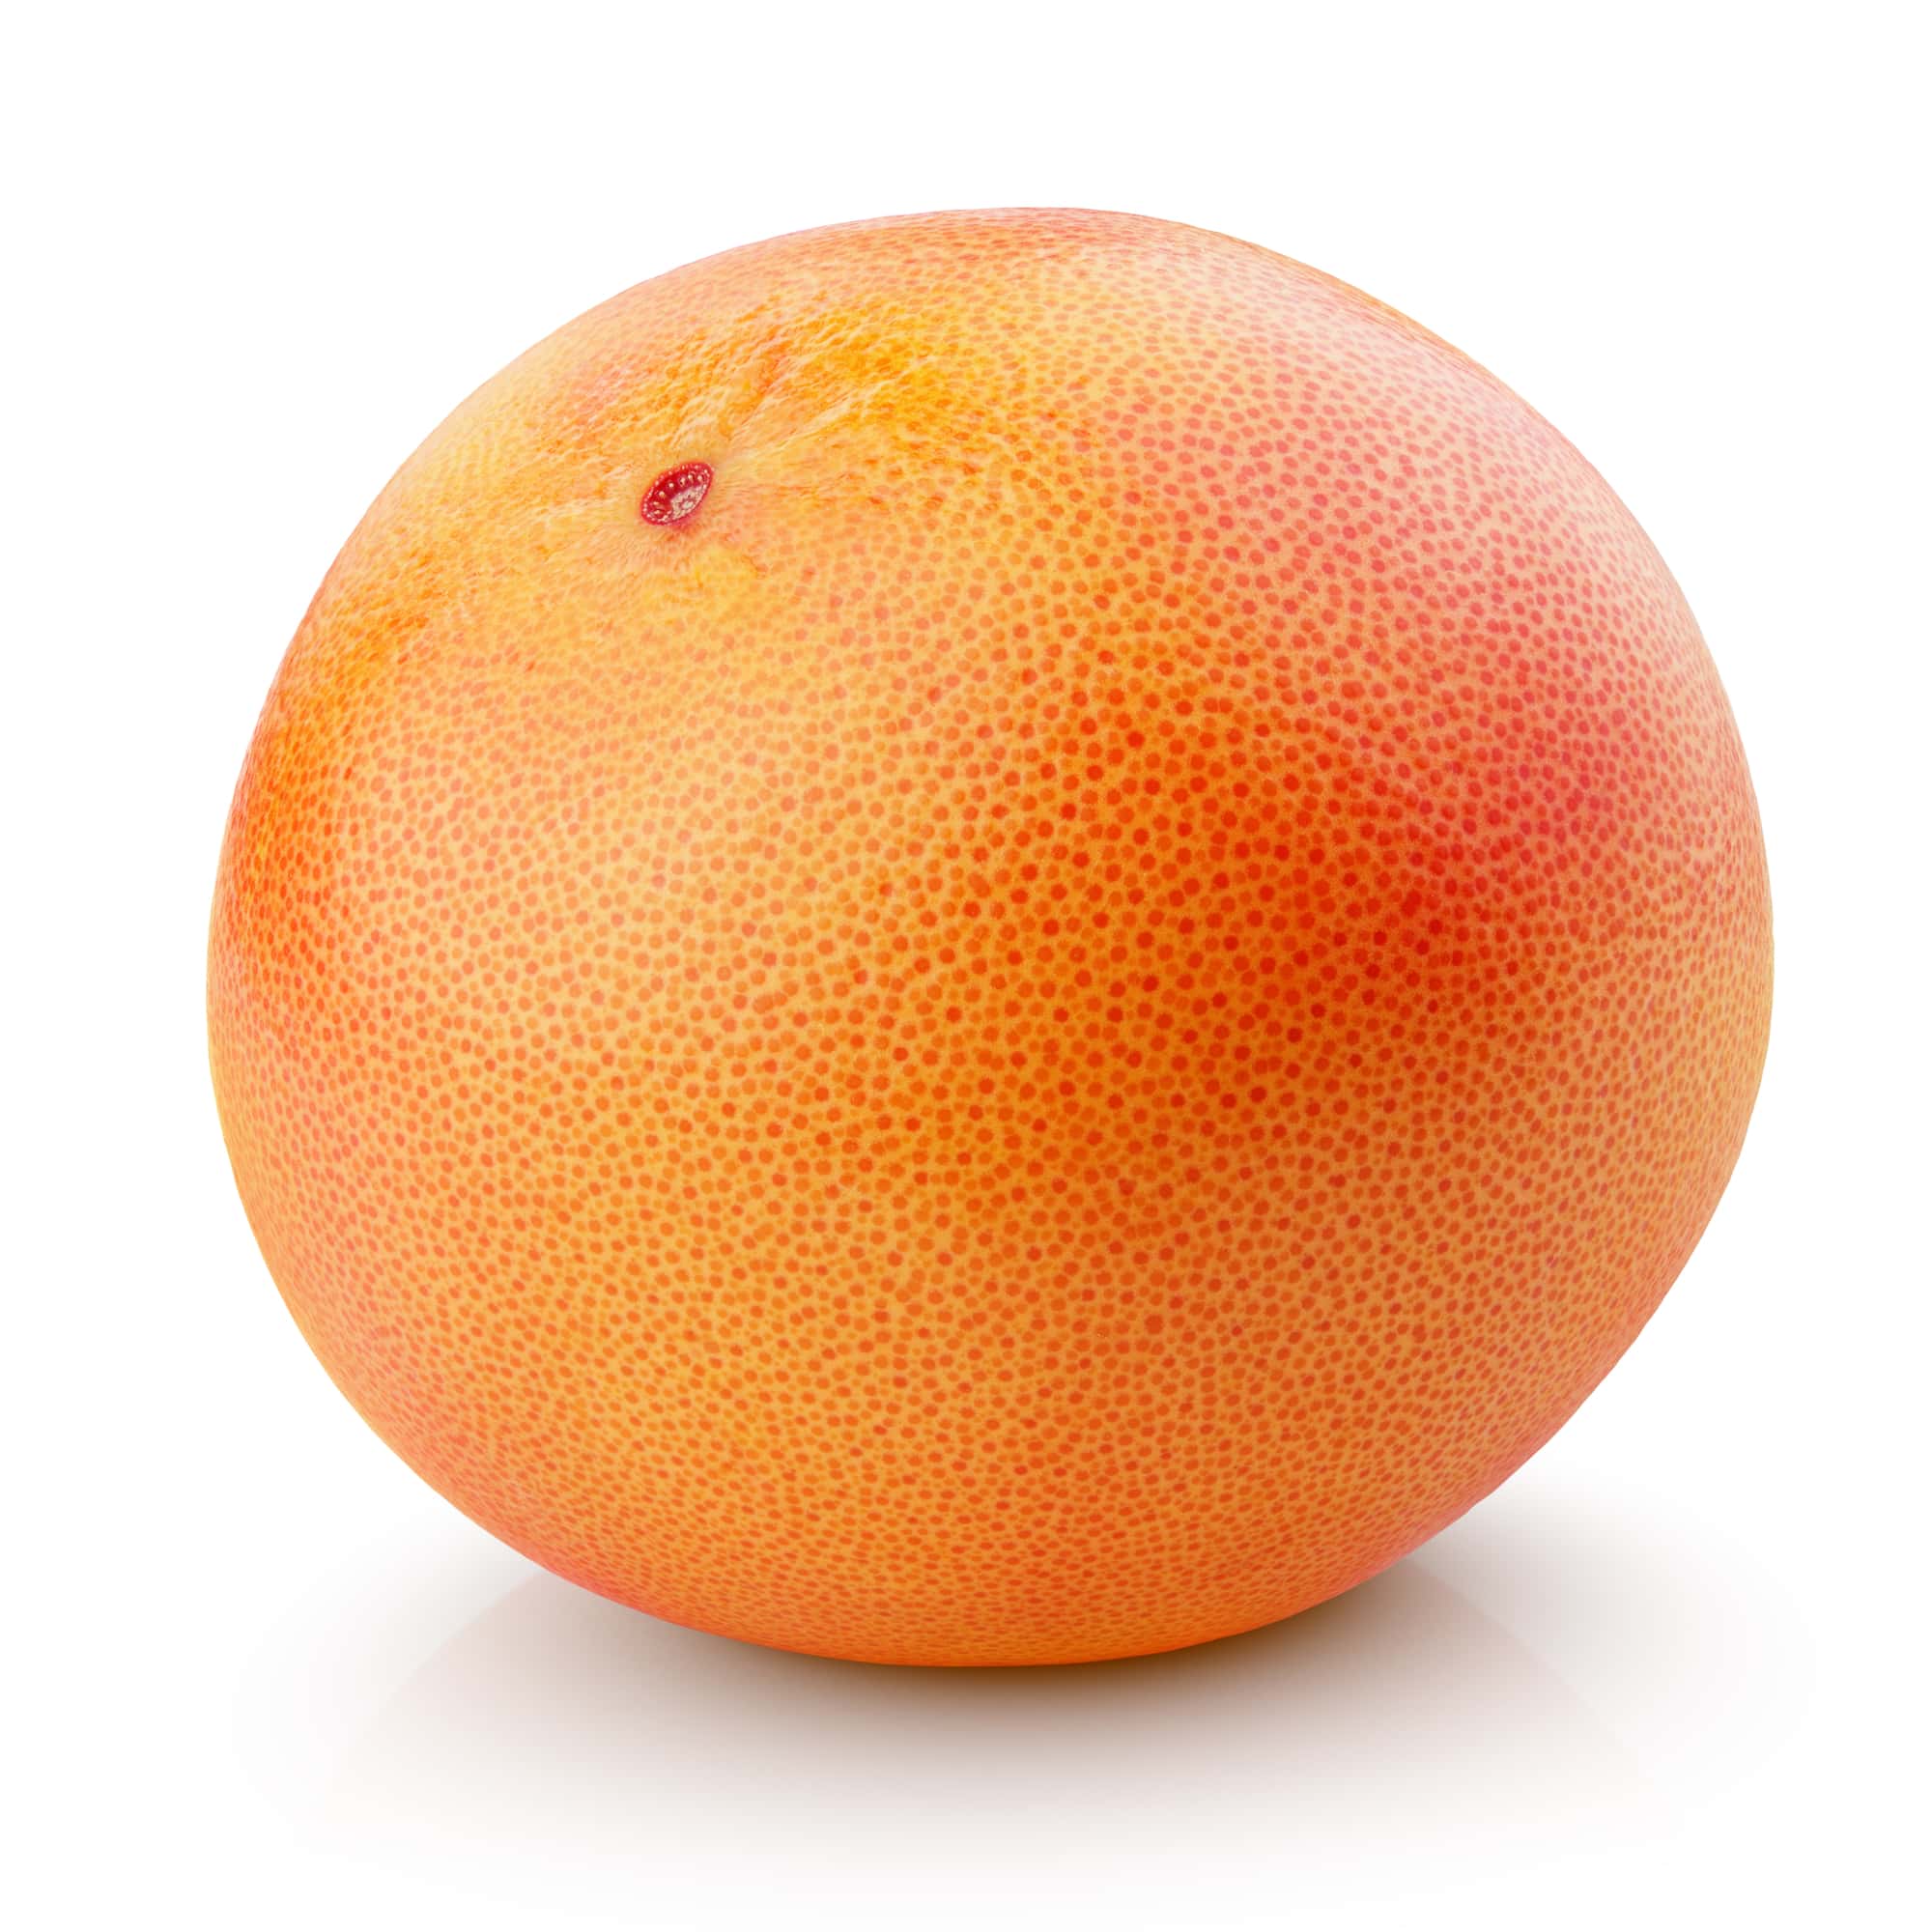 A round grapefruit.